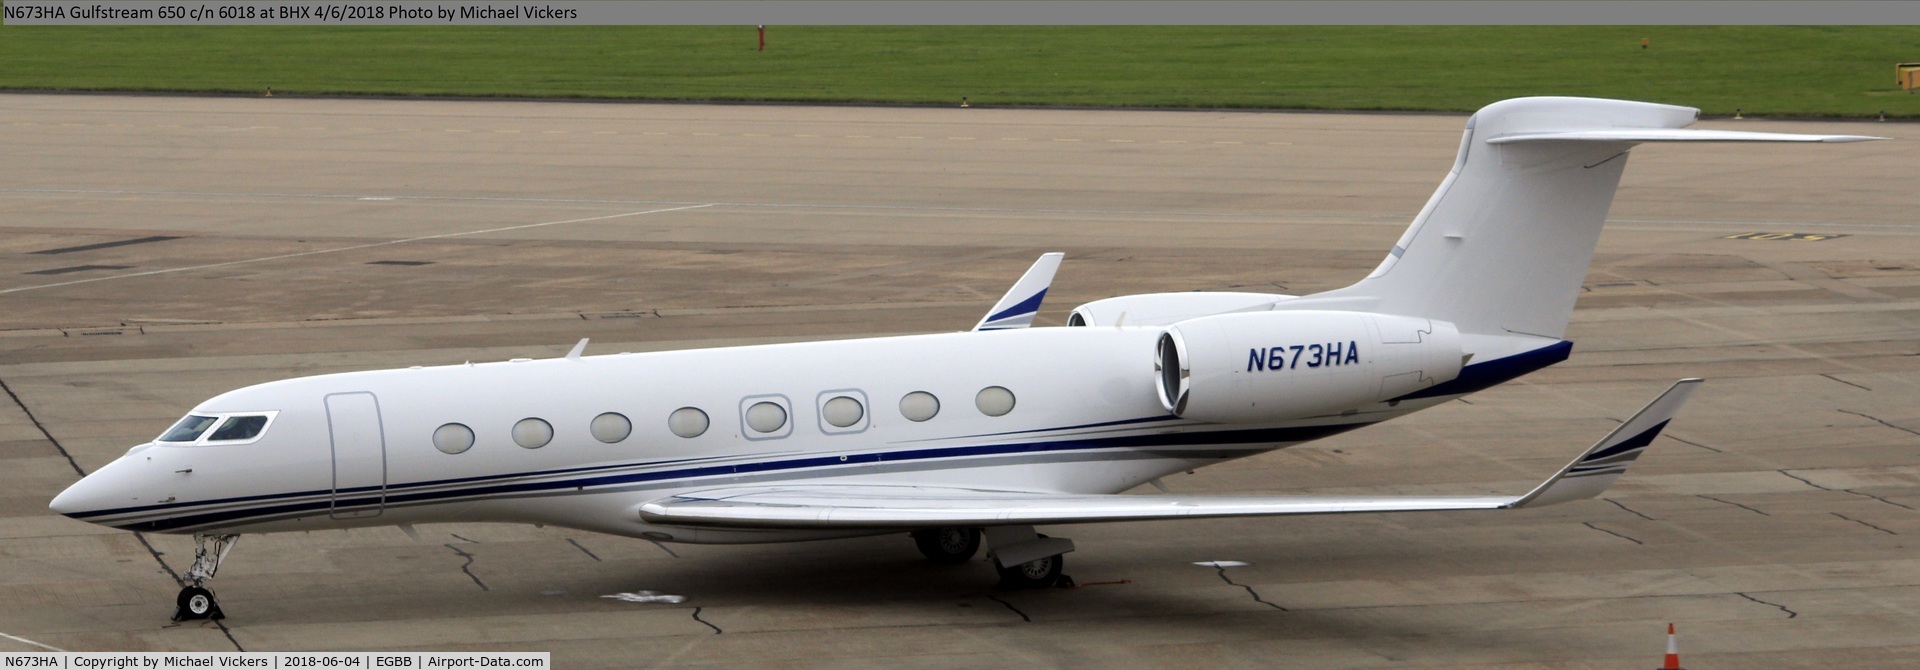 N673HA, 2013 Gulfstream Aerospace G650 (G-VI) C/N 6018, Parked on the elmdon apron